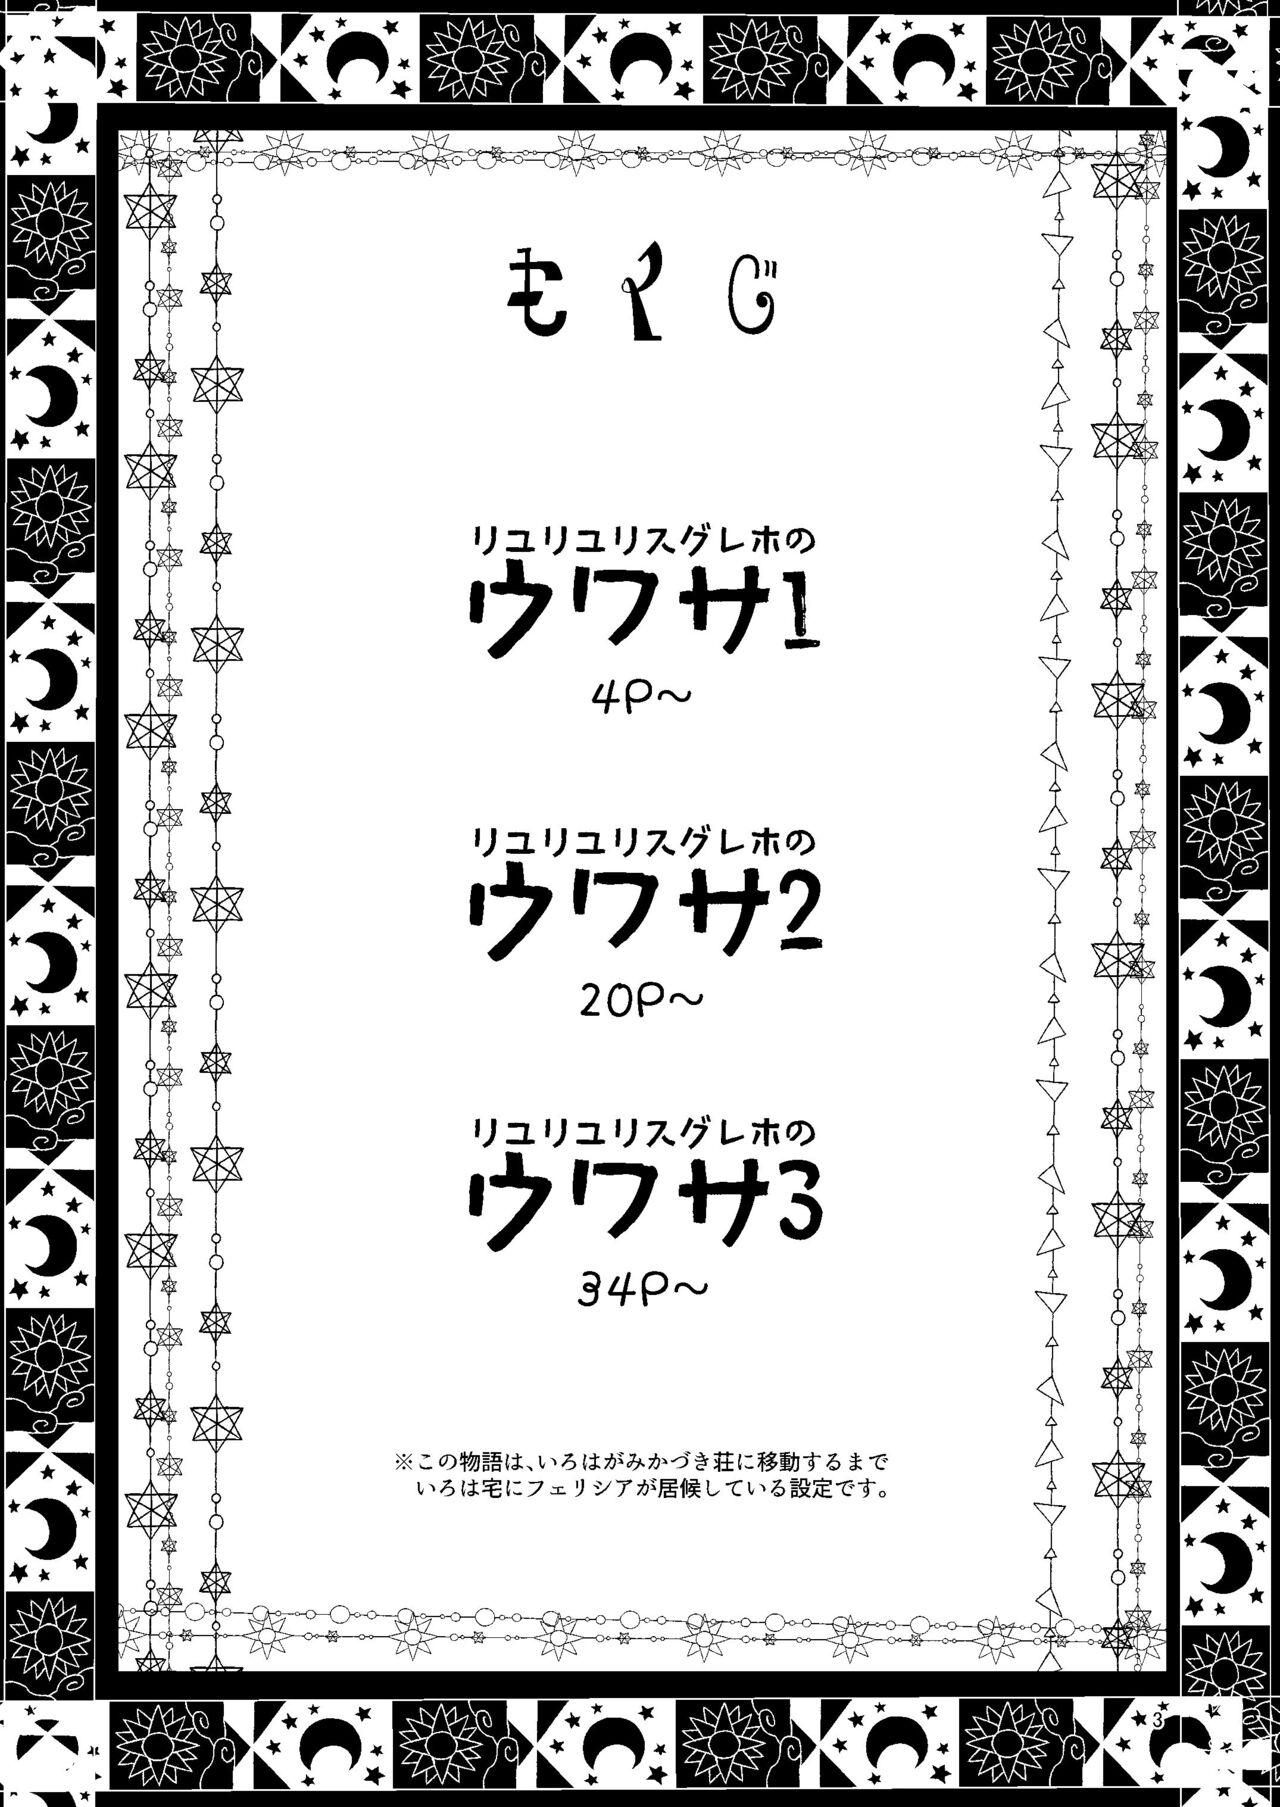 Transexual Riyuriyu Risugureho no Uwasa 3 - Puella magi madoka magica side story magia record Office - Page 3